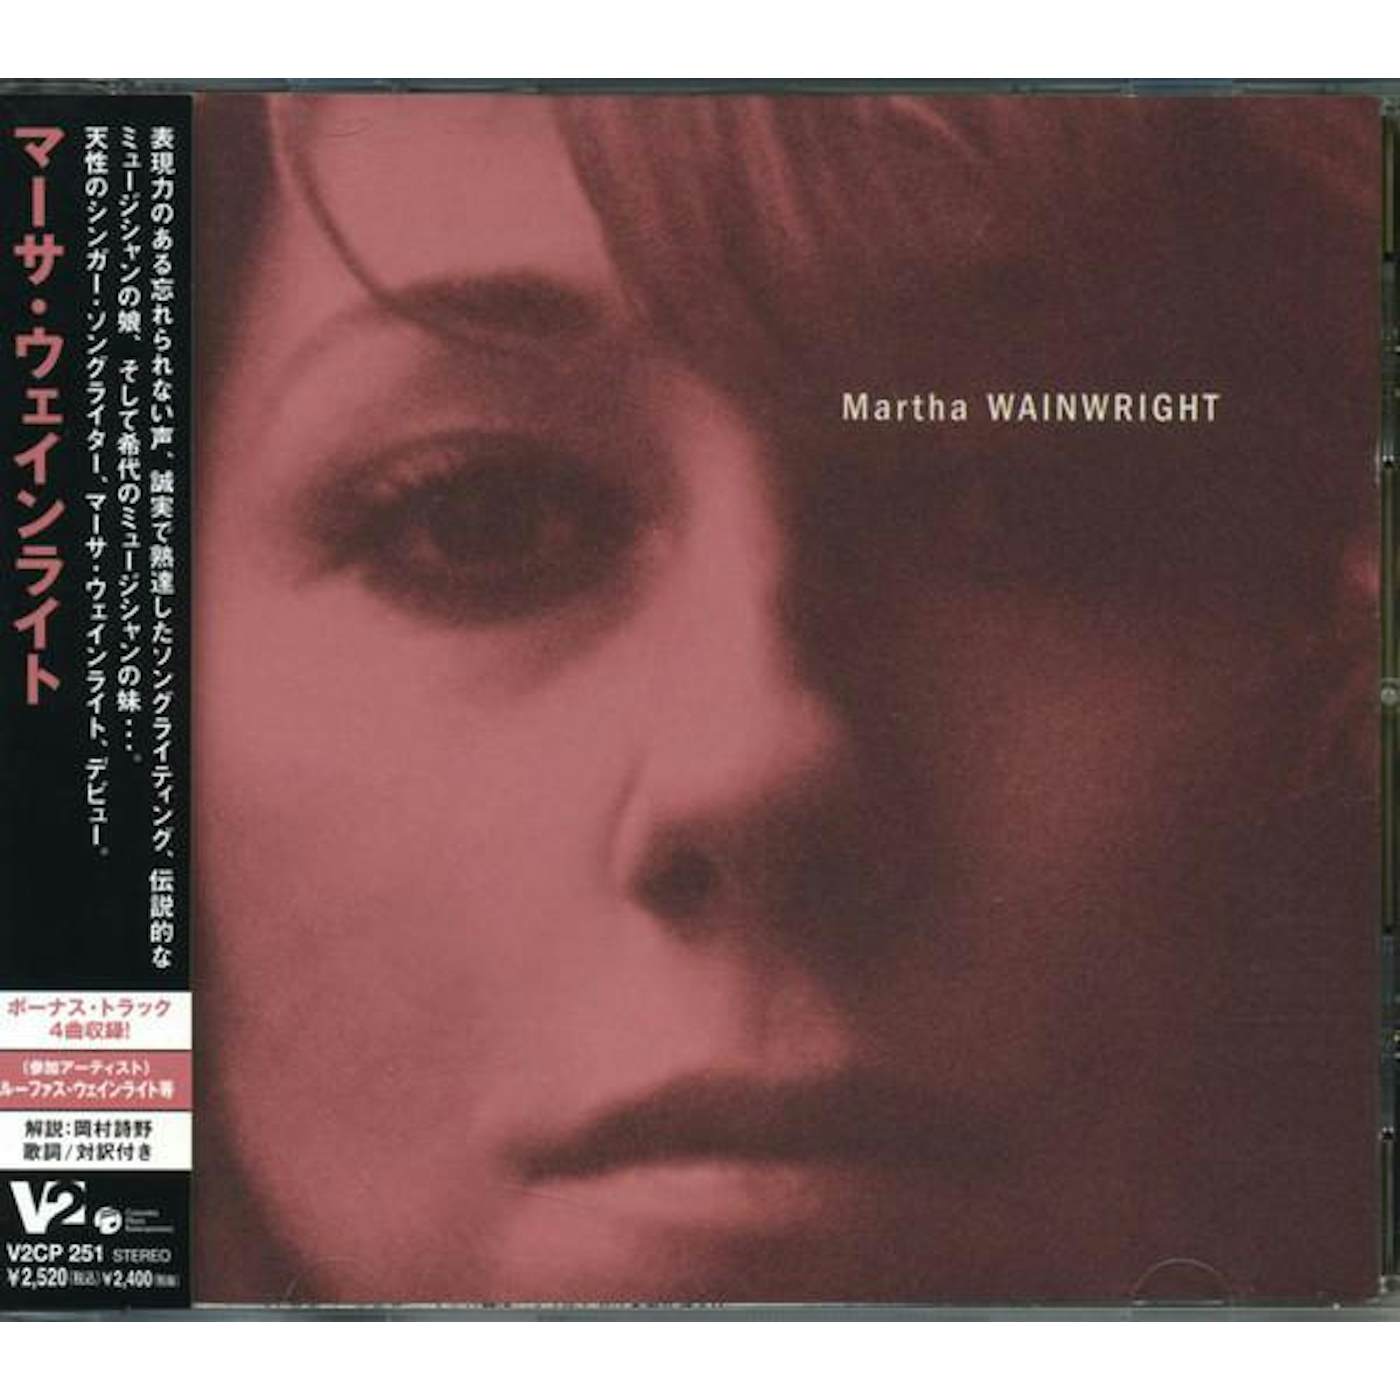 Martha Wainwright CD